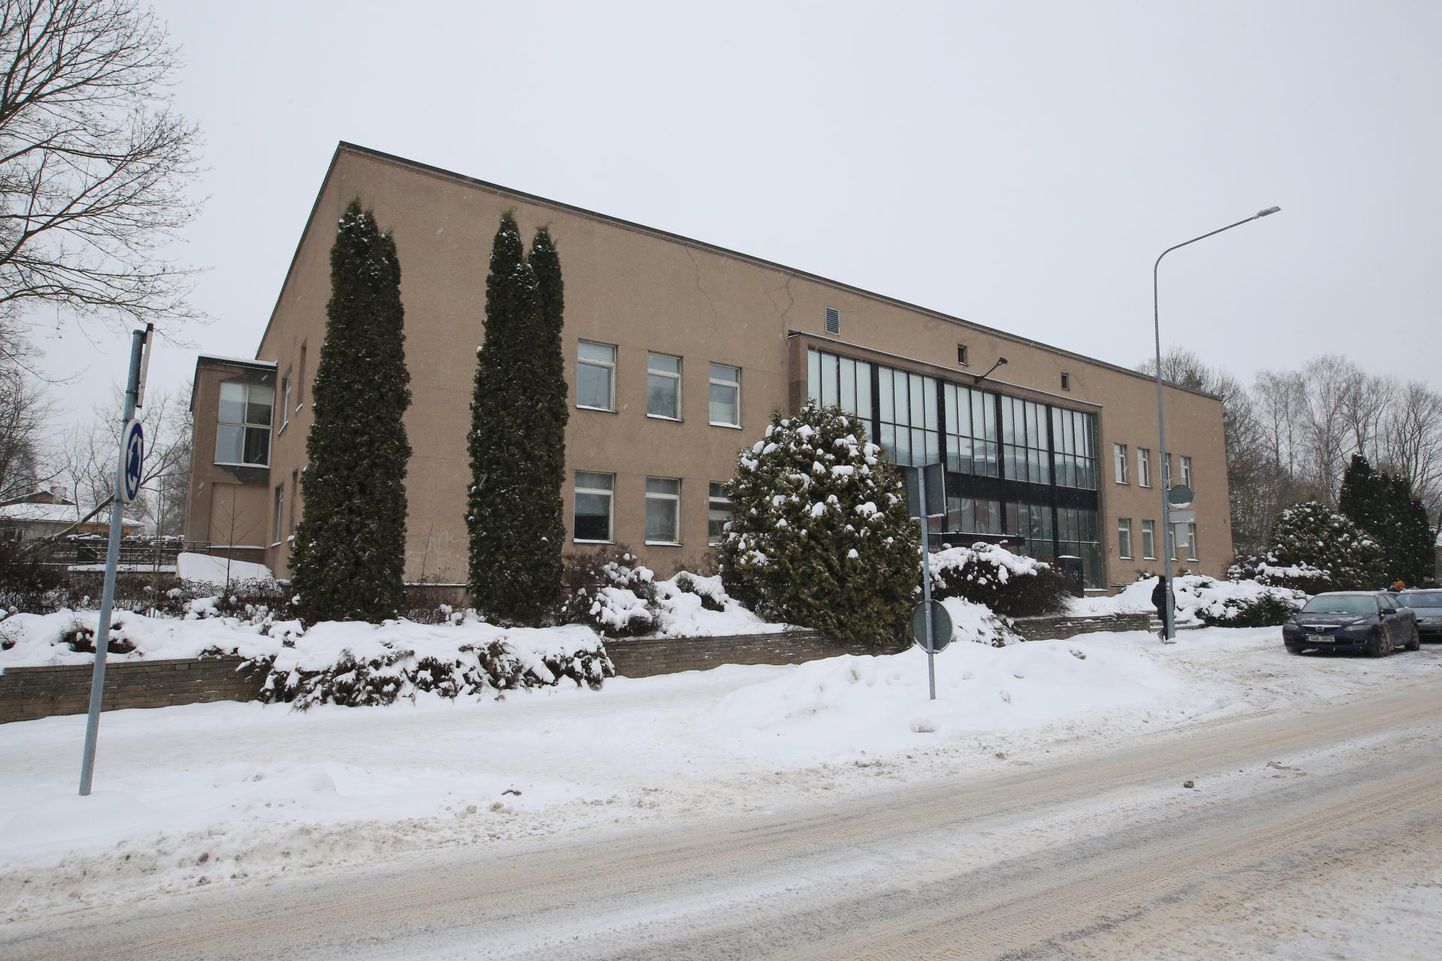 ERMi endine näitusemaja Kuperjanovi 9 seisab juba viiendat talve tühjana.